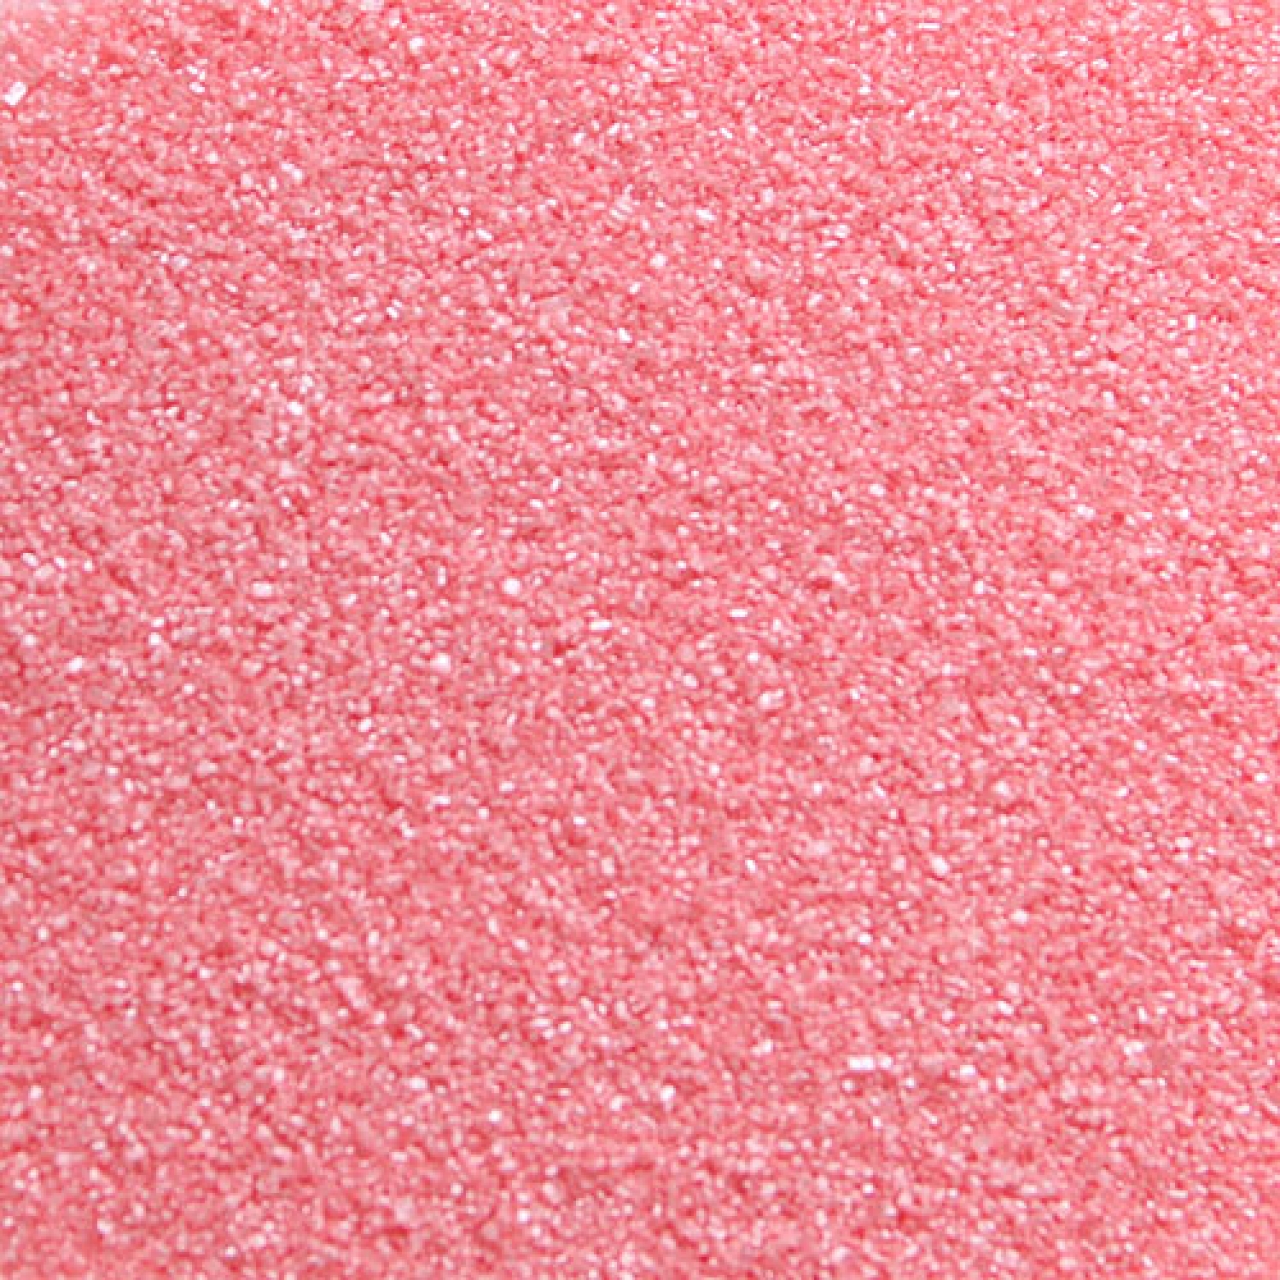 Bunter Zucker Pink Sugarflair 100 g